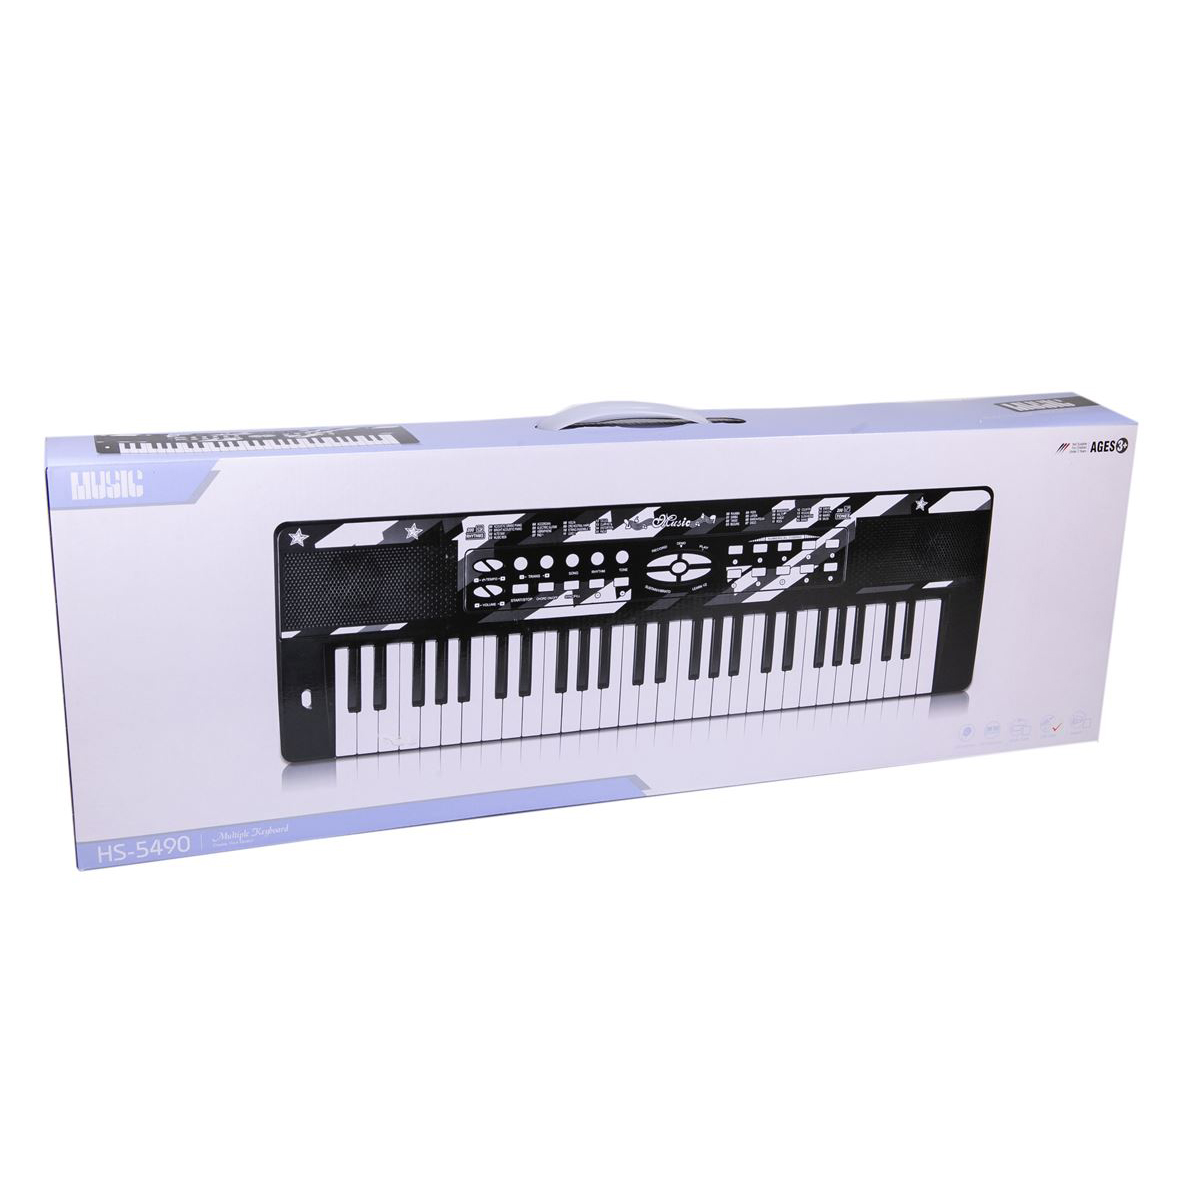 بازی آموزشی کیبورد مدل پیانو 5490